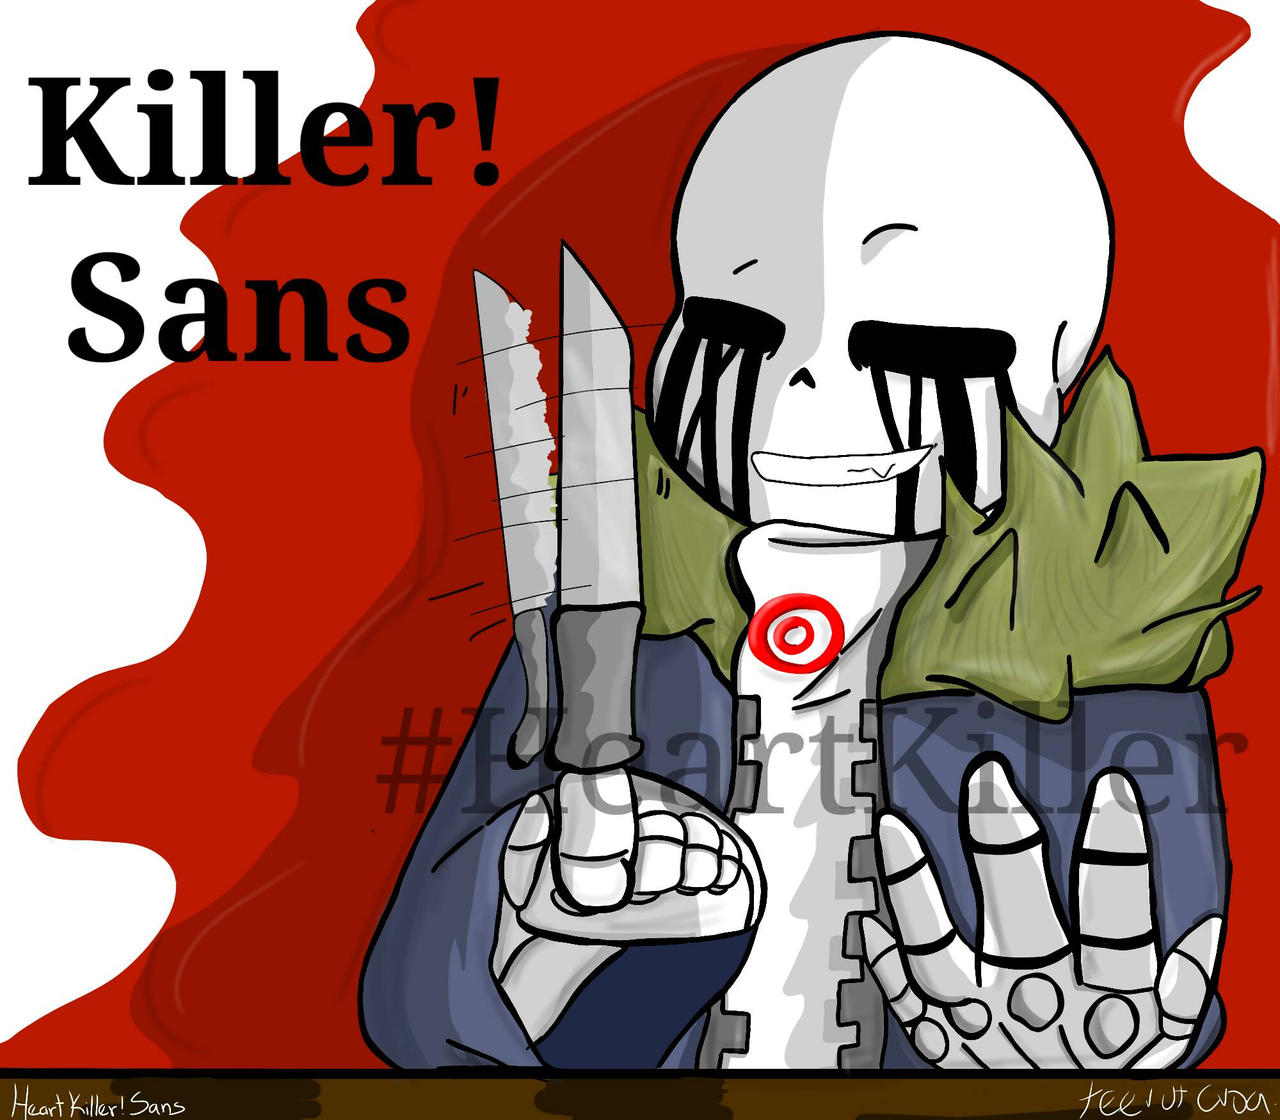 Killer sans wallpaper by sanslovesketchup - Download on ZEDGE™